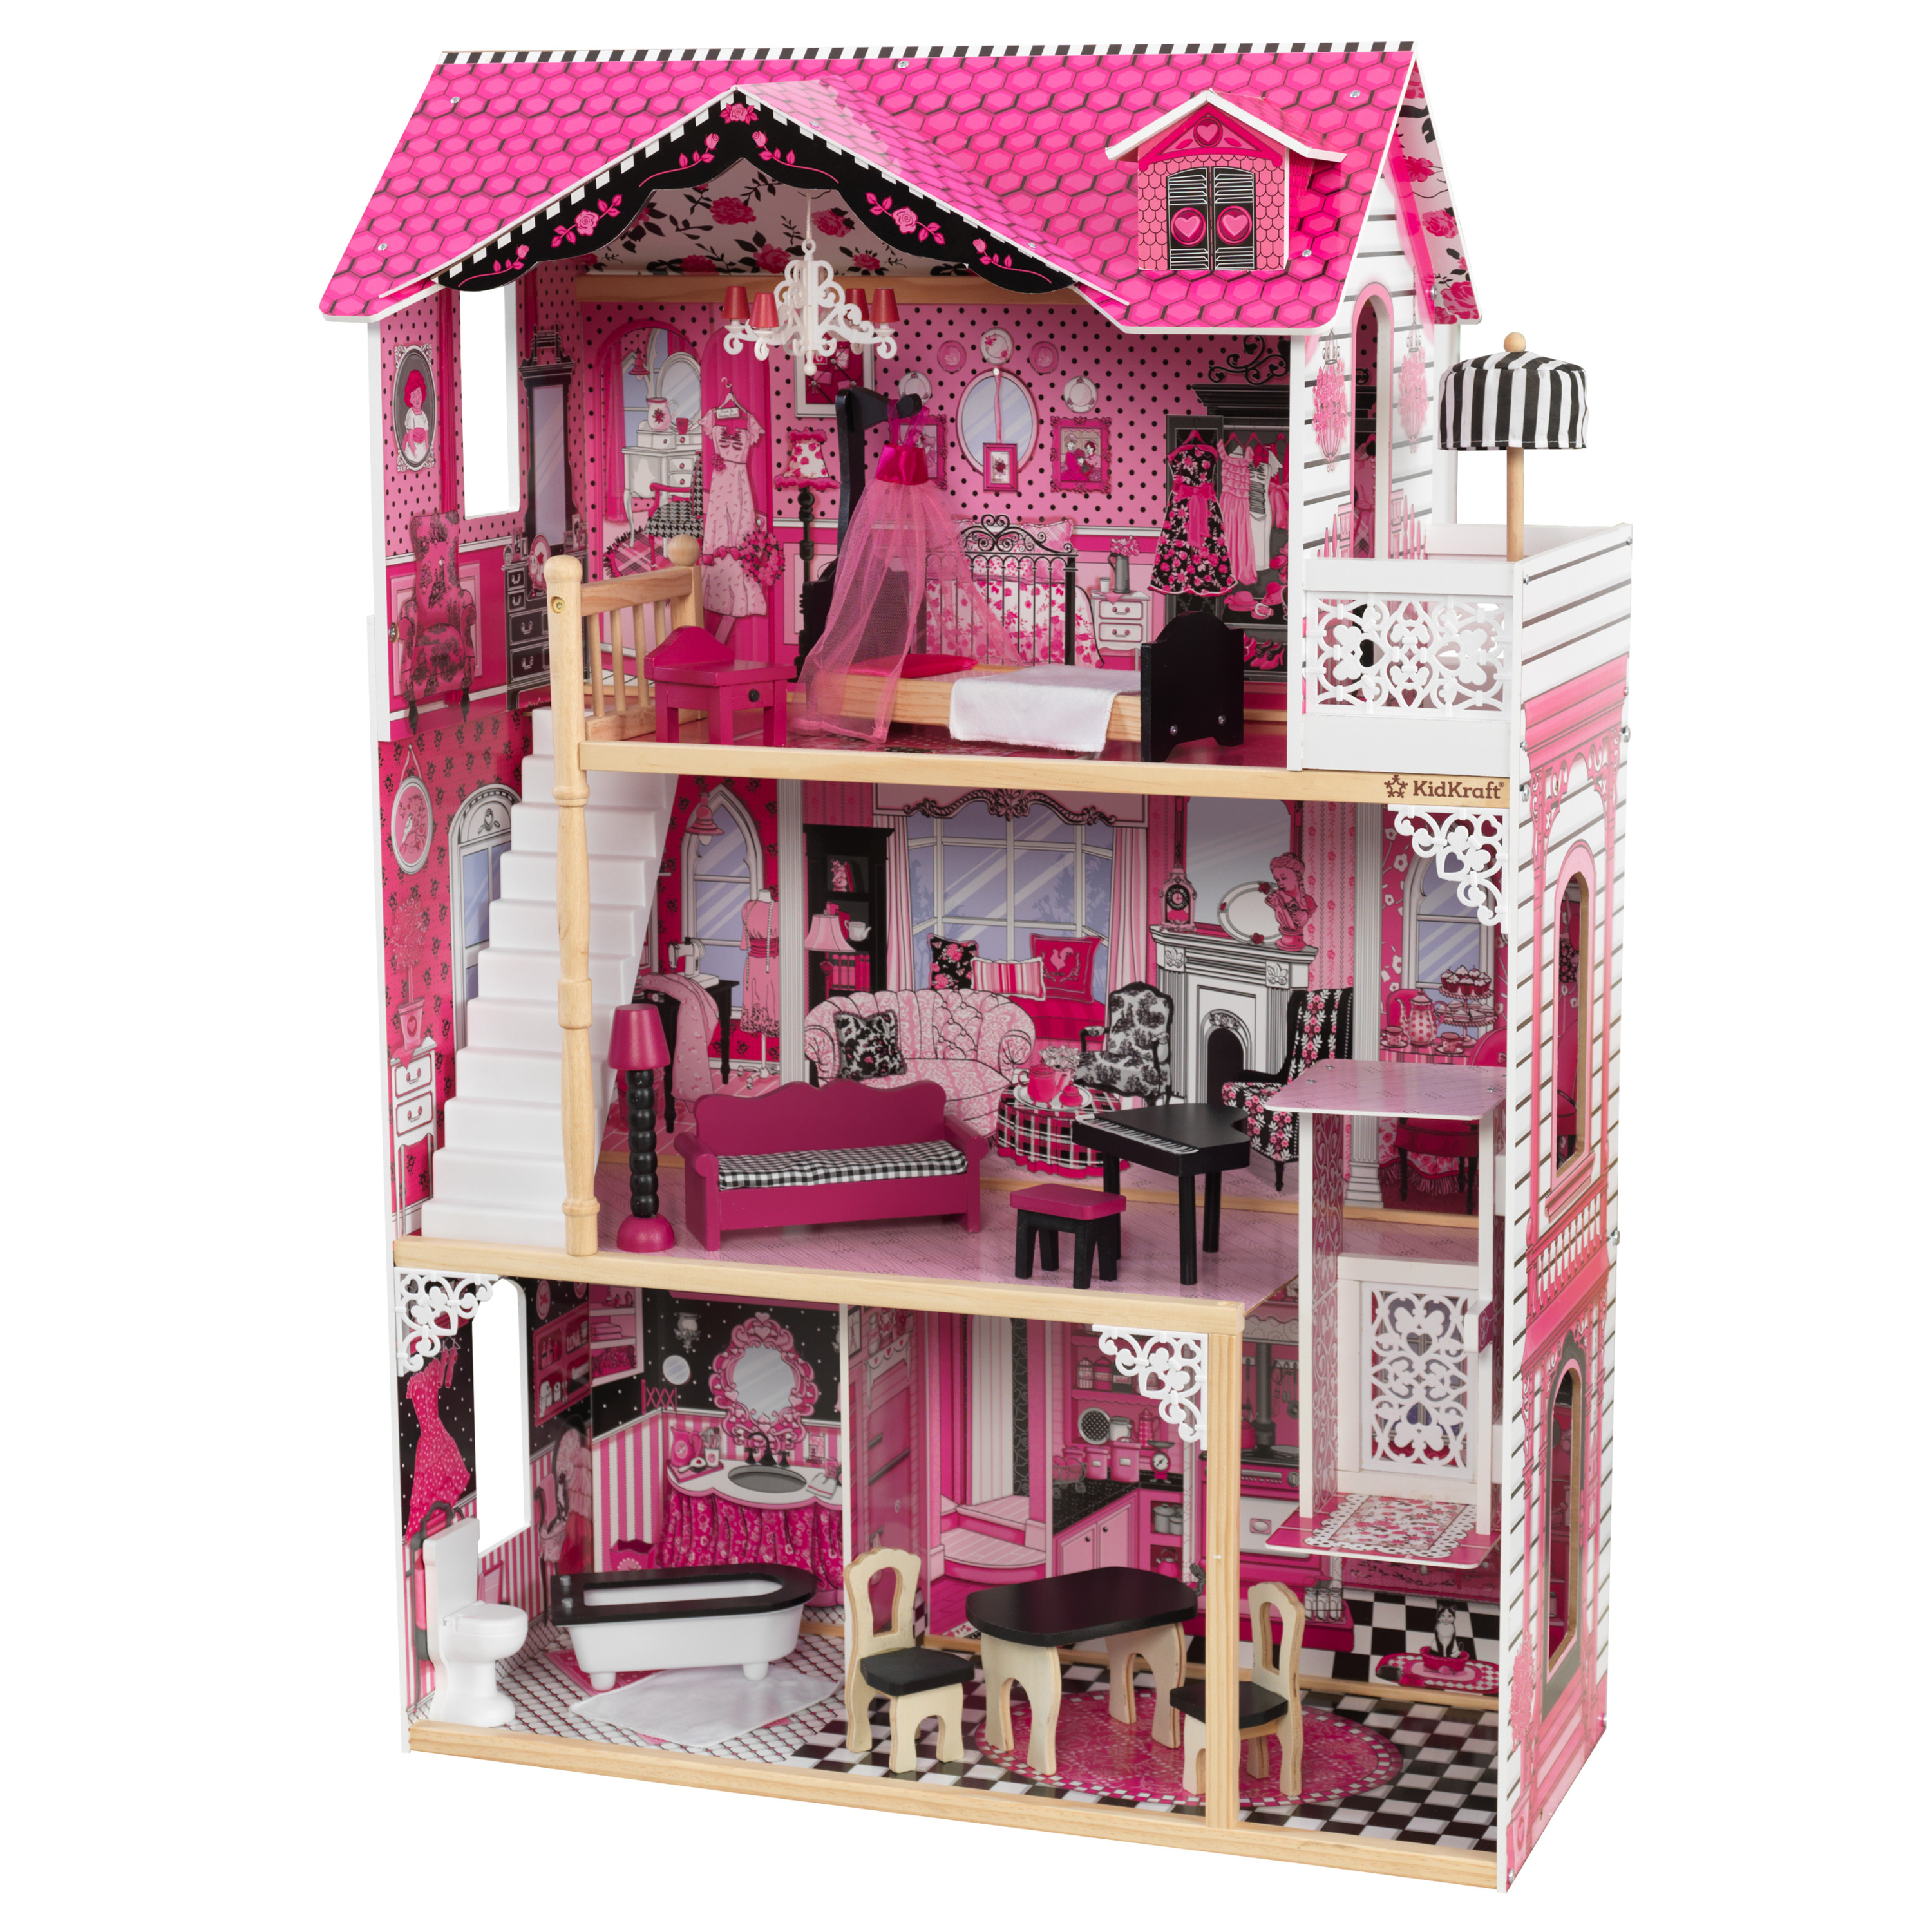 Amelia doll house - la casa delle bambole ideale per ispirare l'immaginazione dei bambini, accogliente, stilosa e fornita di 15 accessori per avventure senza fine - 